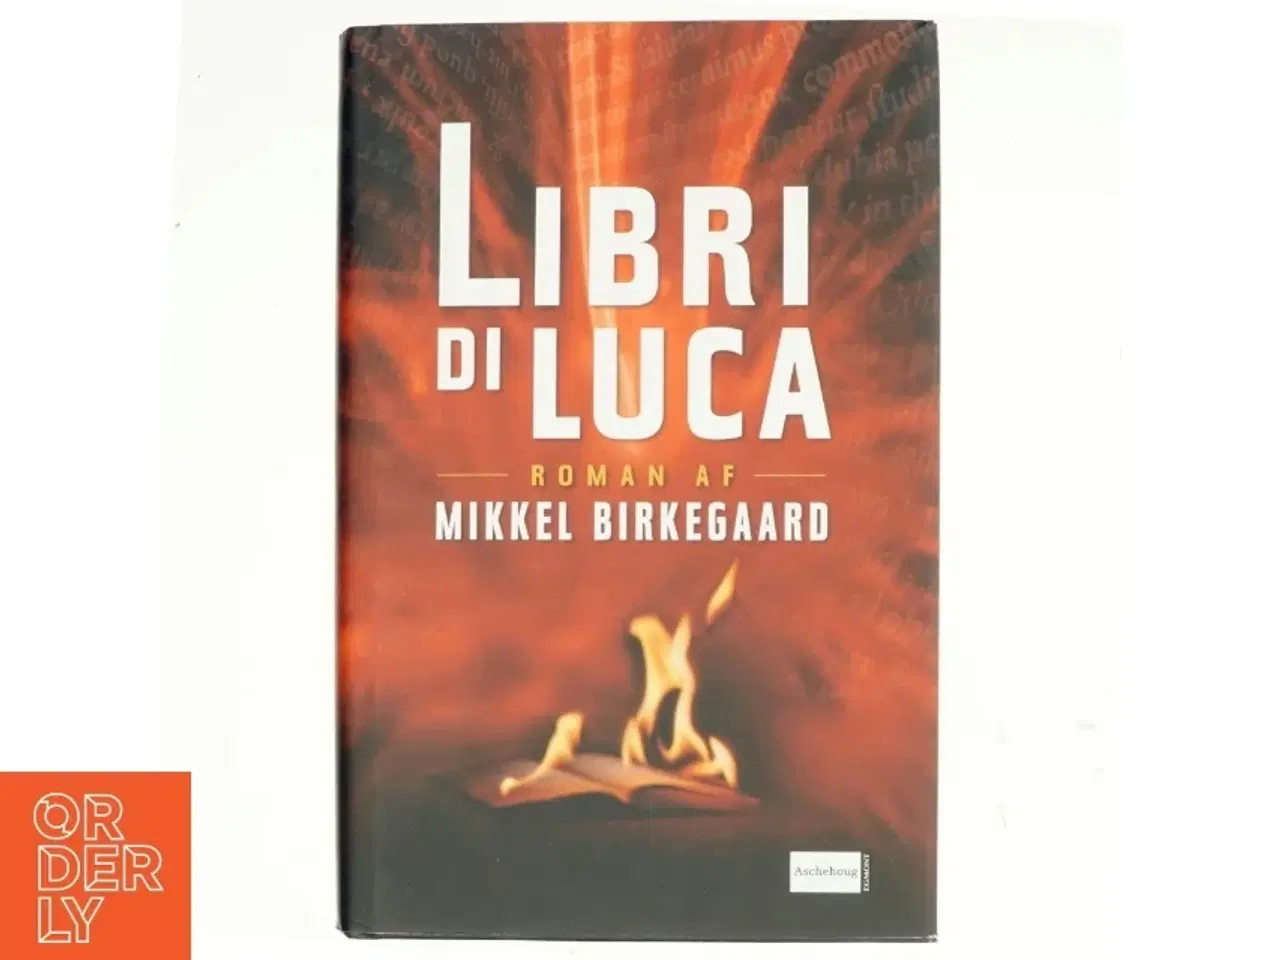 Billede 1 - Libri di Luca af Mikkel Birkegaard (Bog)